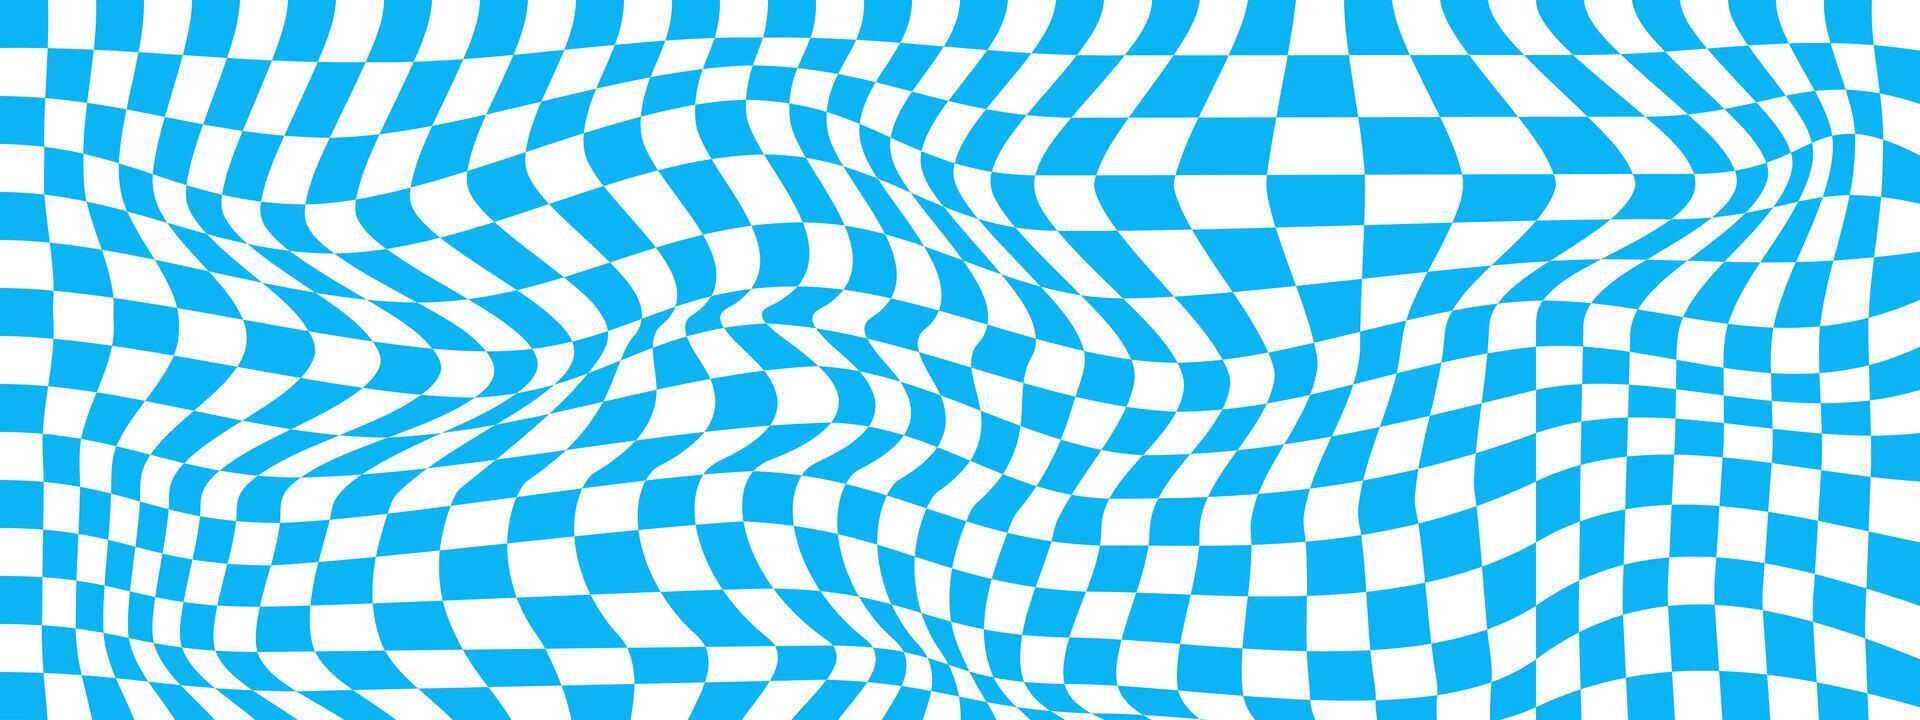 verzerrt Blau und Weiß Schachbrett Hintergrund. kariert optisch Illusion. psychedelisch Muster mit verzogen Quadrate. trippy Schachbrett Textur vektor